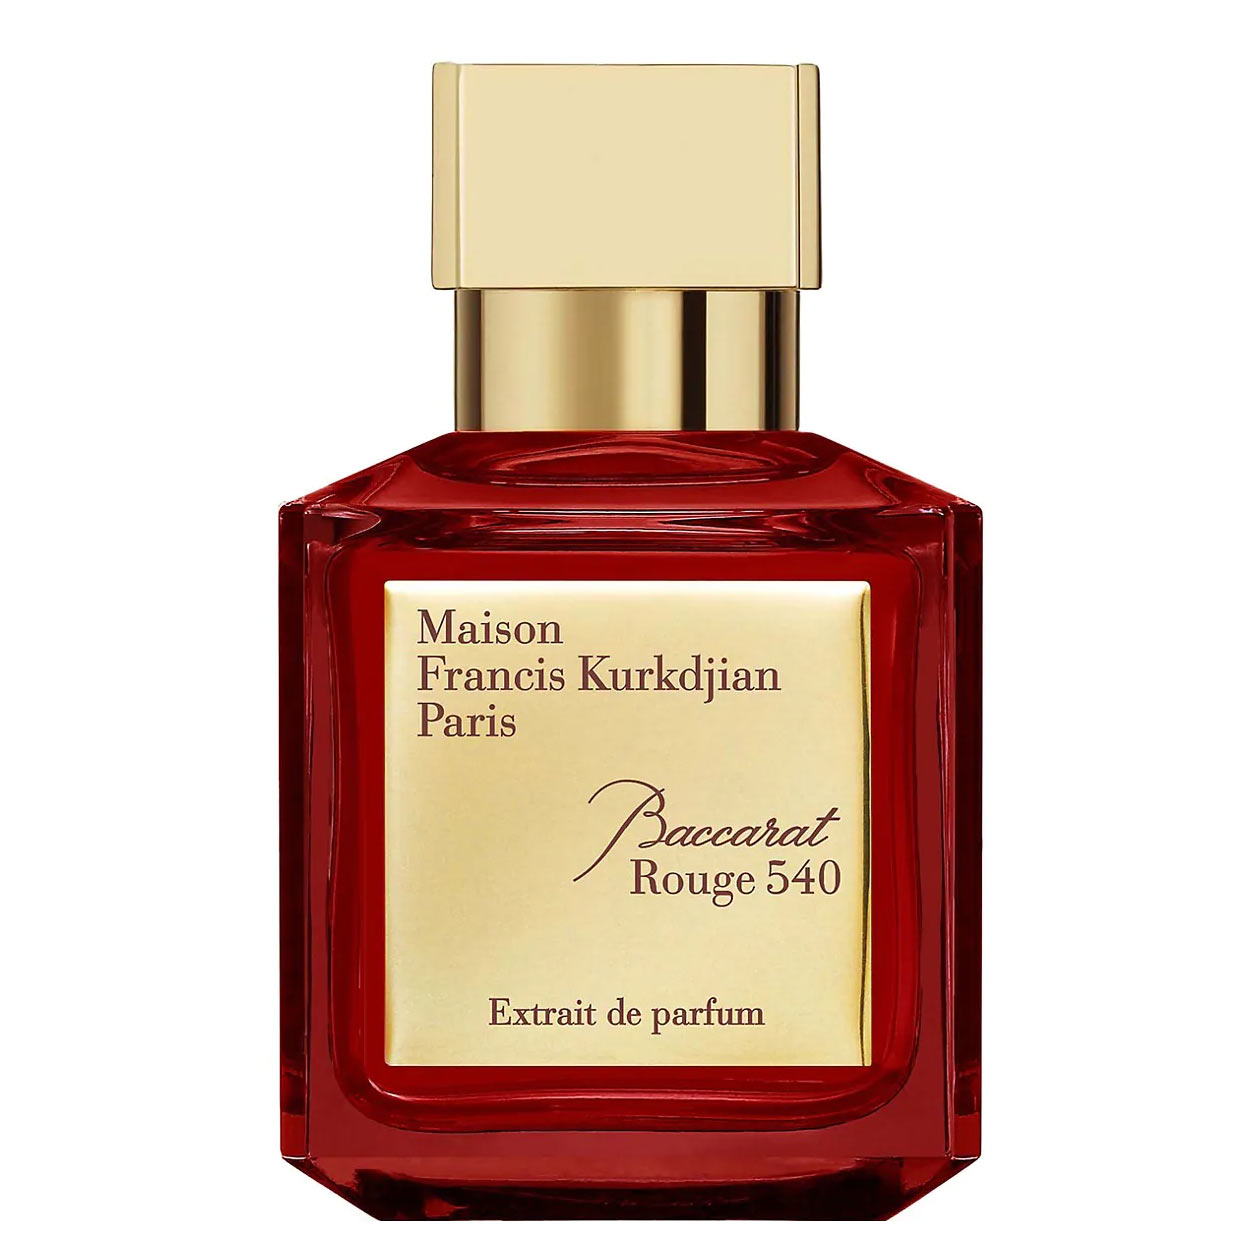 Baccarat-Rouge-540-Extrait-de-Parfum-Maison-Francis-Kurkdjian